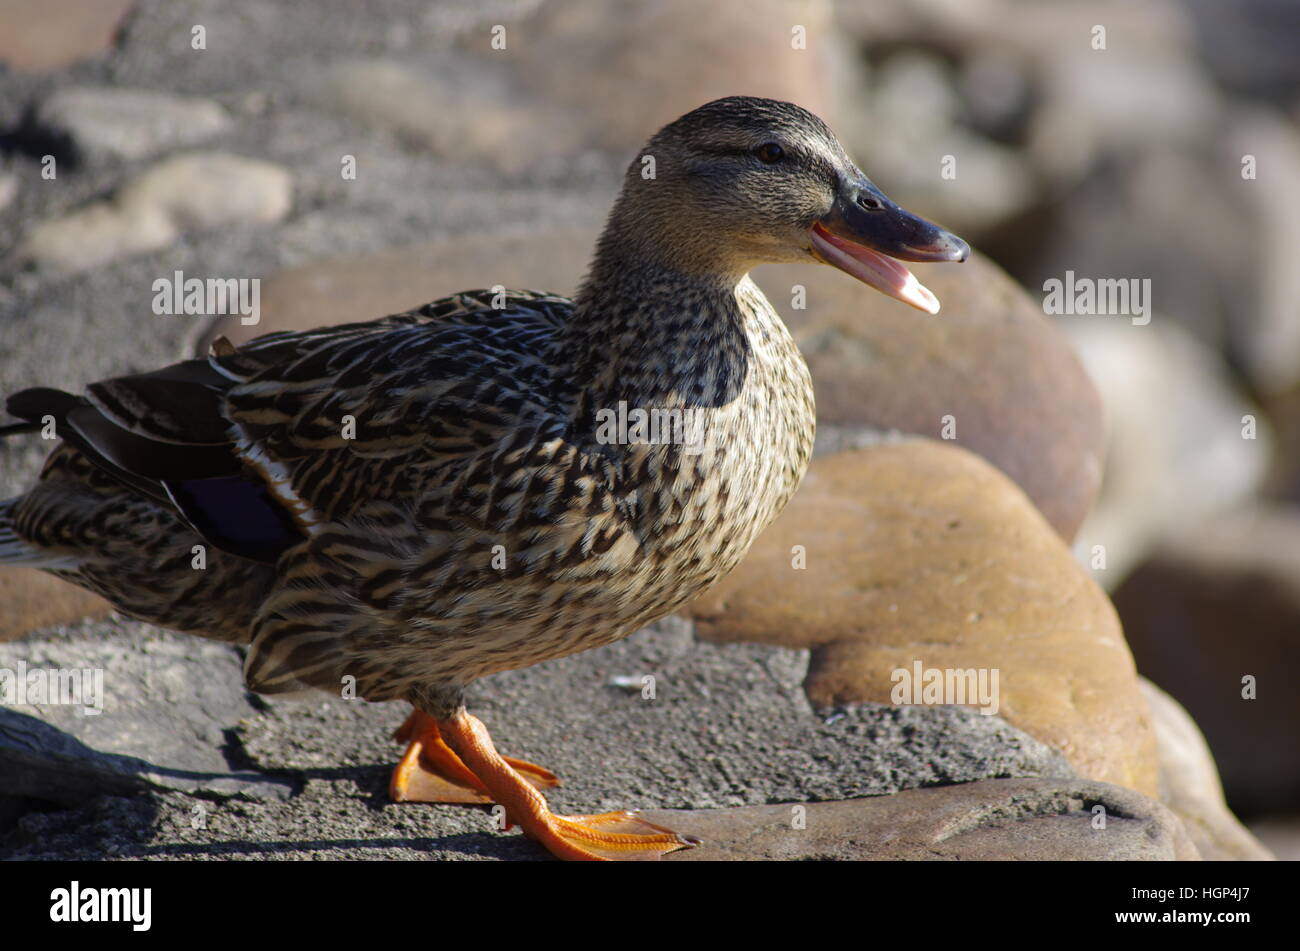 Brown femelle noir blanc et orange canard quacking avec bec ouvert la marche sur des rochers face à la lumière du soleil Banque D'Images